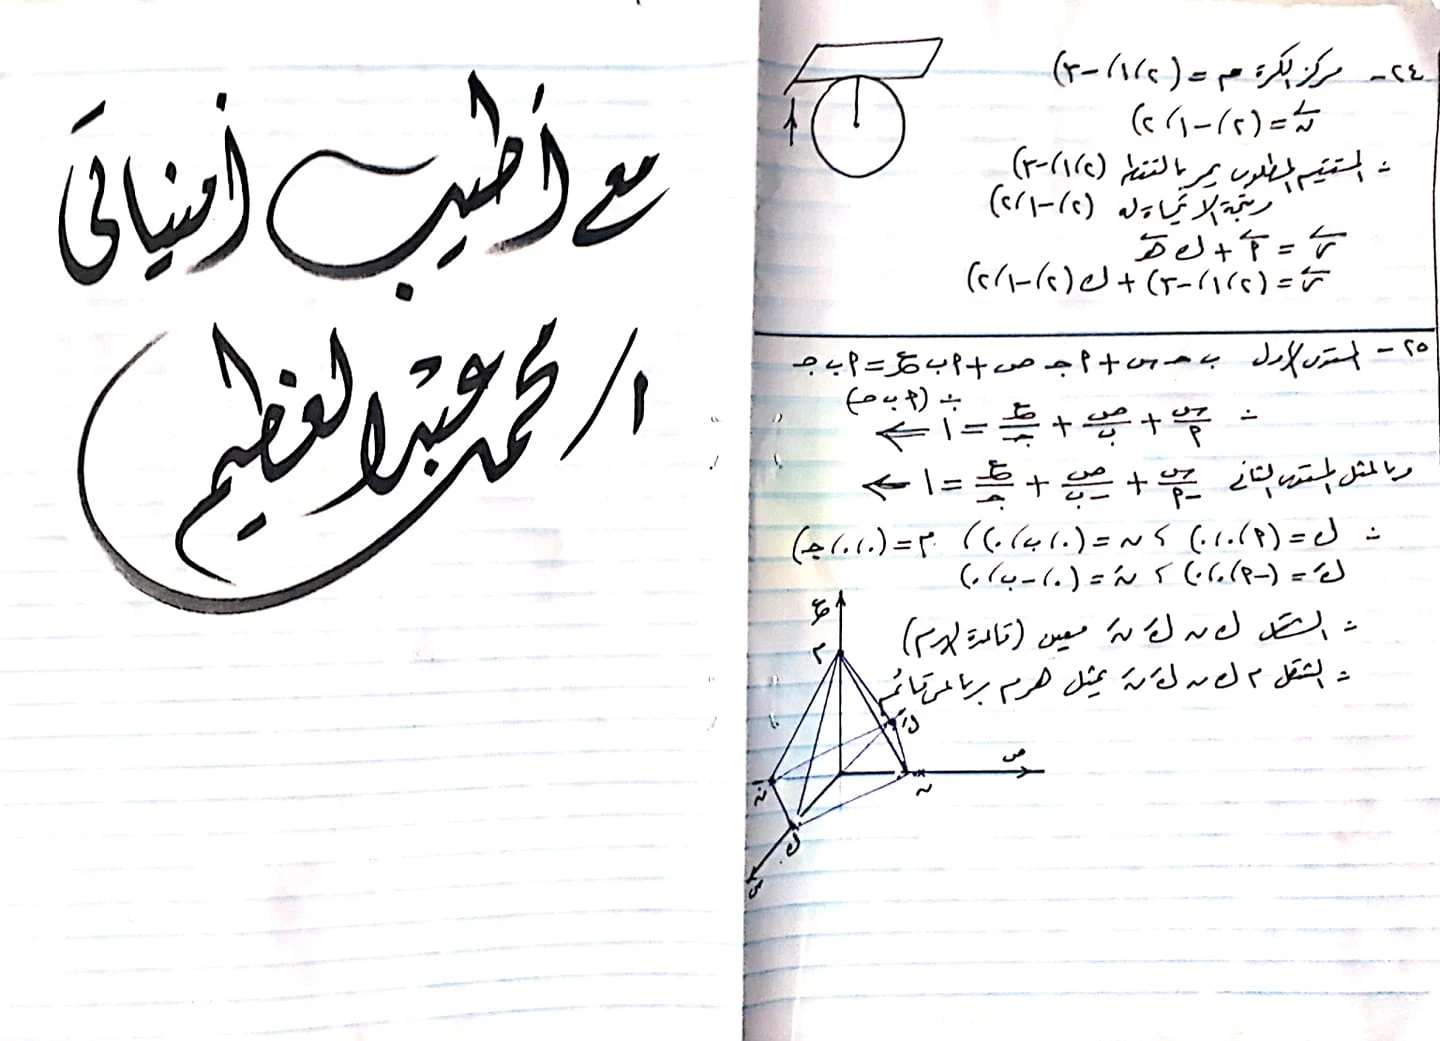 الورقة الرابعة :- من الامتحان التجريبي لوزارة التربية و التعليم  بجمهورية مصر العربية